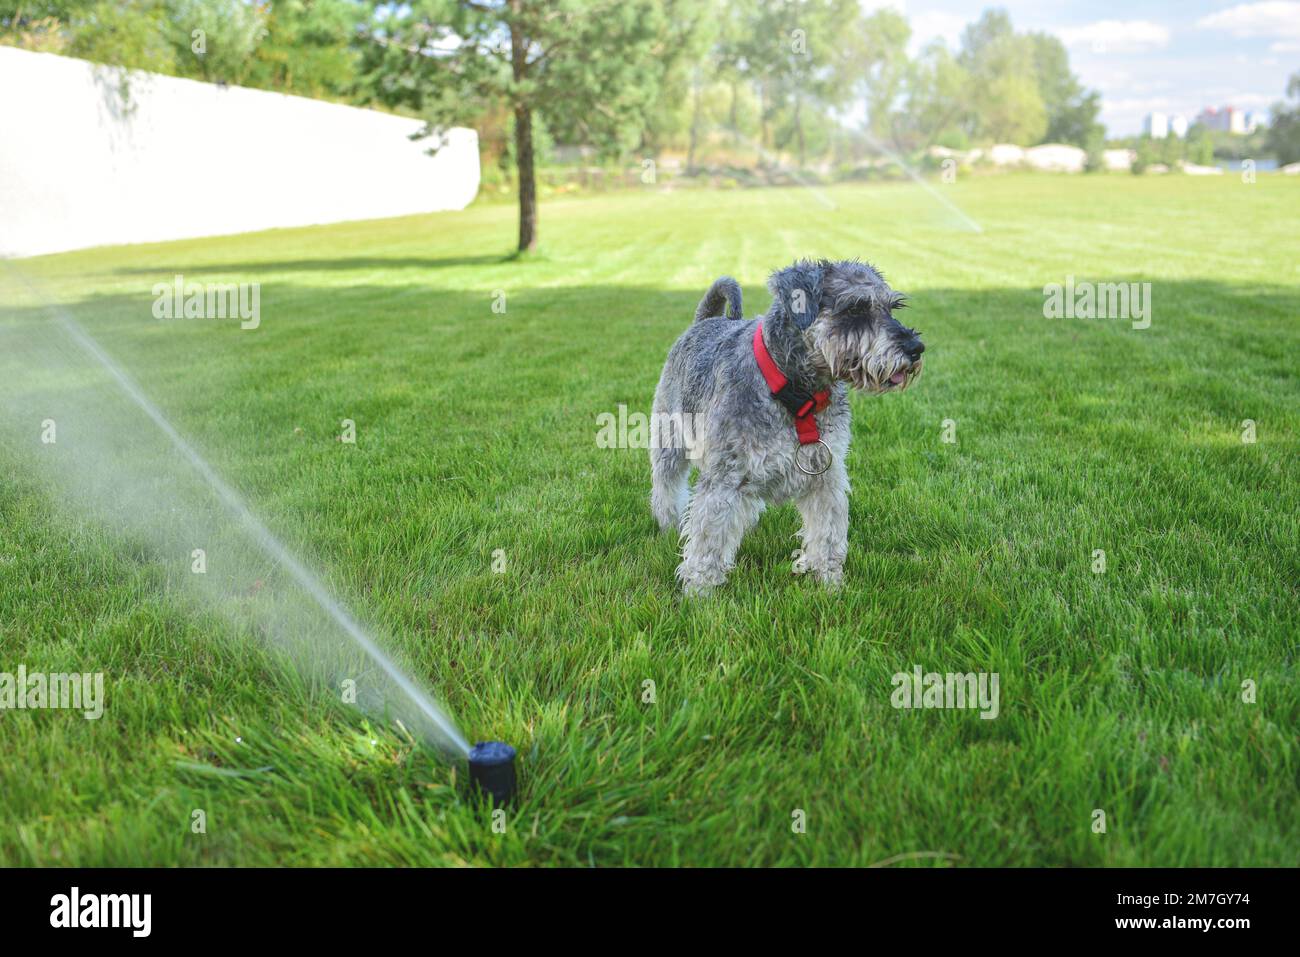 Animal de compagnie heureux et humide chien schnauzer chiot jouant avec de l'eau, buvant par arroseur dans une chaude journée d'été Banque D'Images